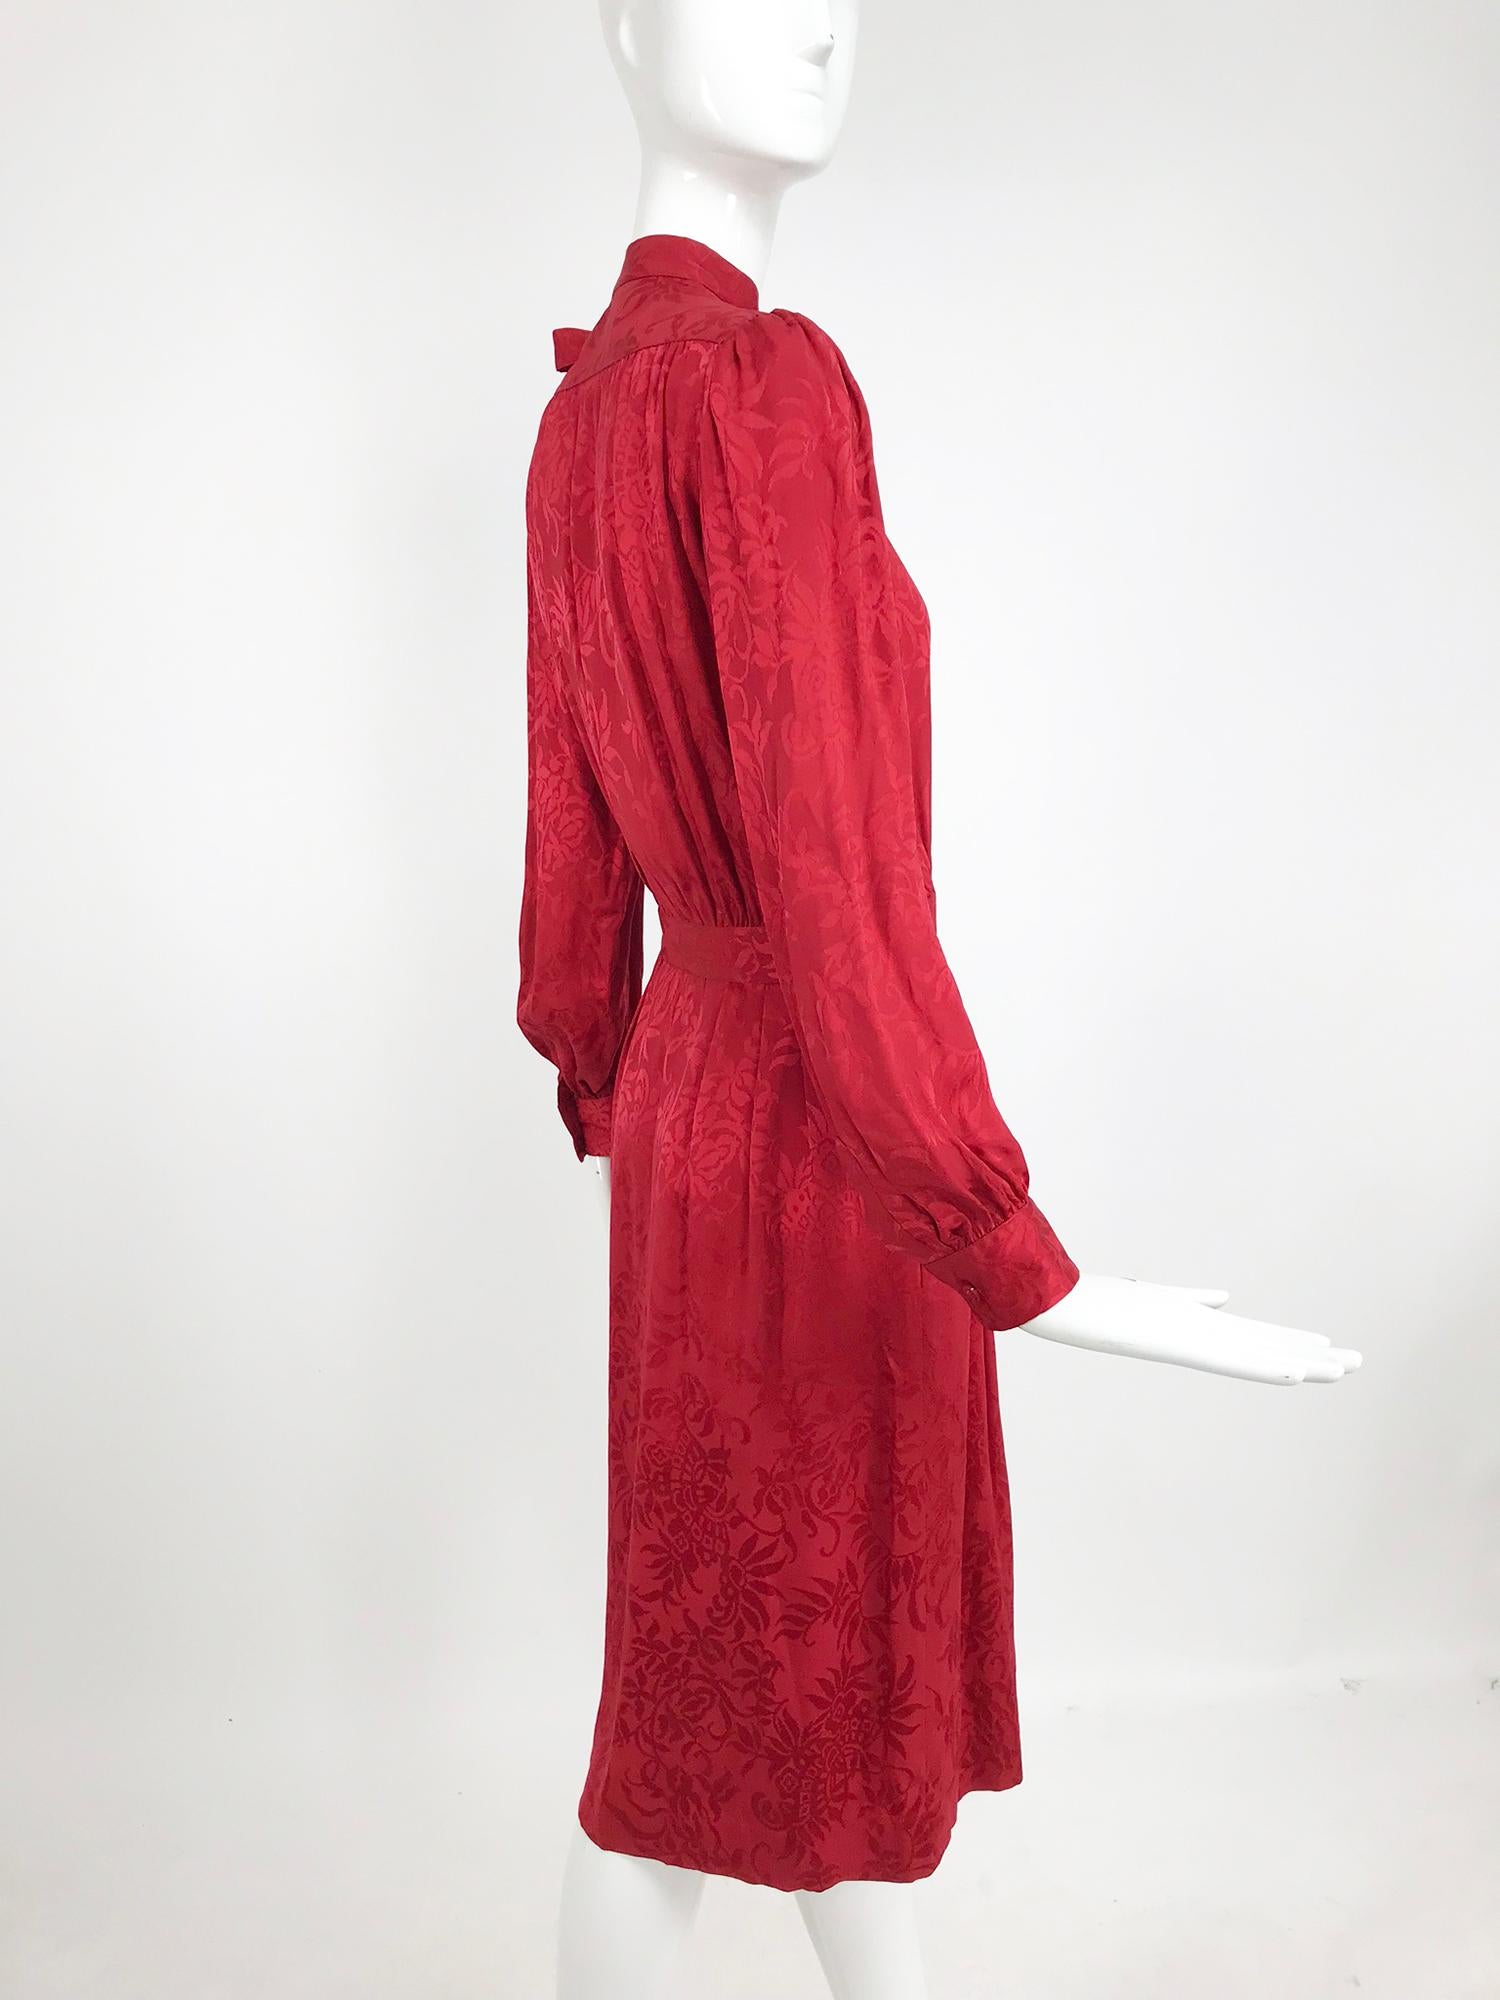 Yves Saint Laurent - Robe en jacquard de soie rouge avec nœud papillon, années 1970 3